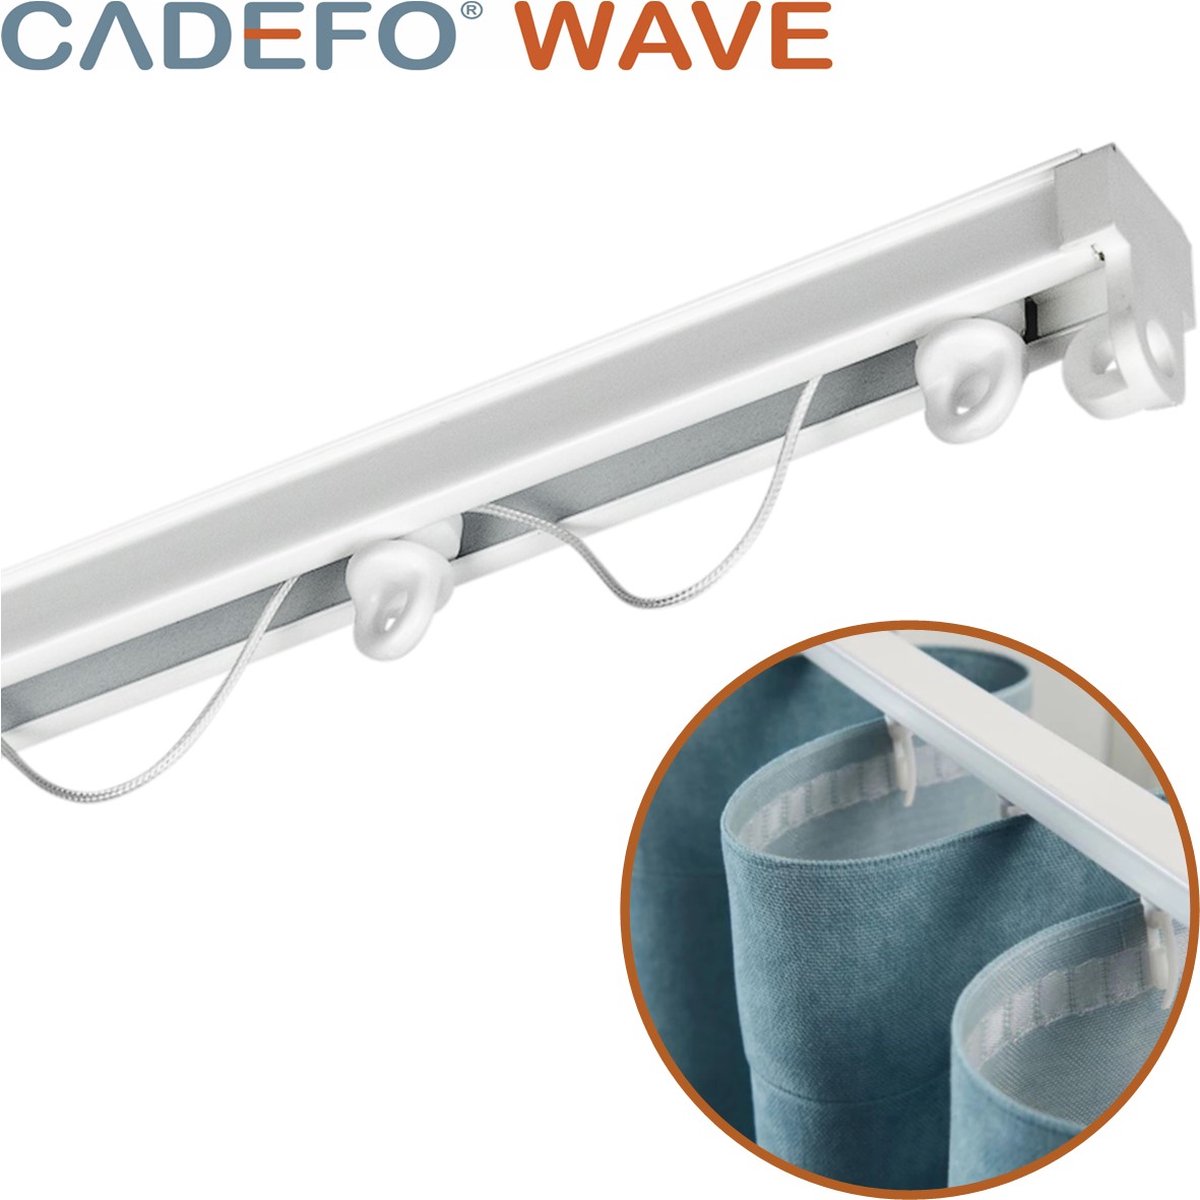 CADEFO WAVE (501 - 550 cm) Gordijnrails - Compleet op maat! - UIT 1 STUK - Leverbaar tot 6 meter - Plafondbevestiging - Lengte 515 cm